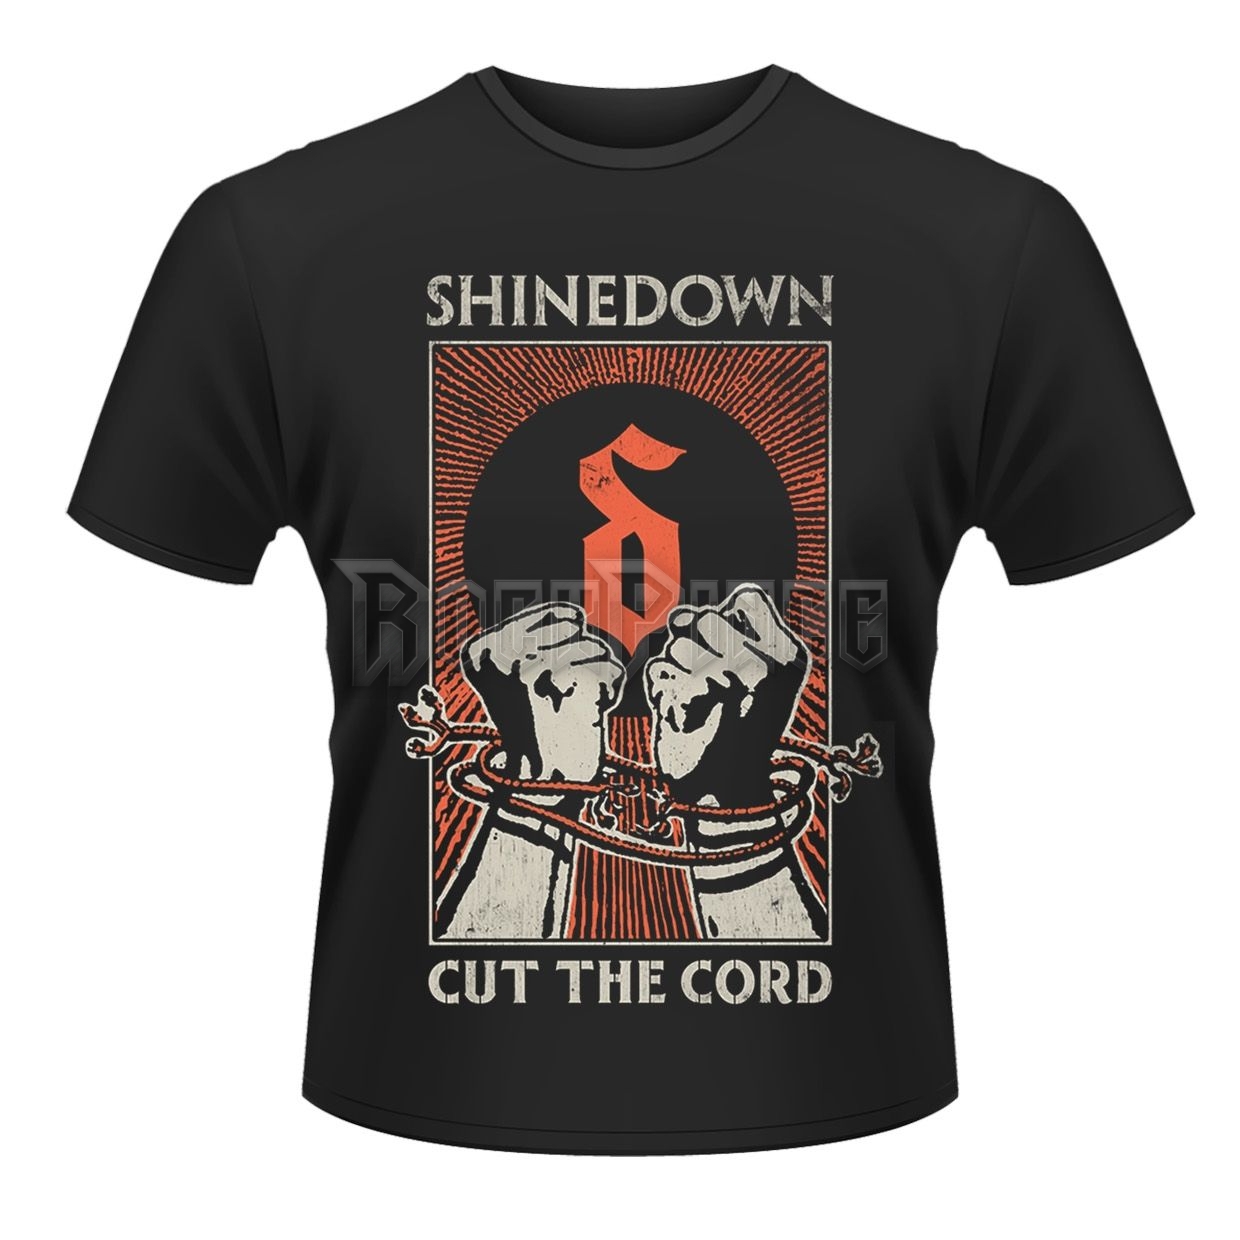 SHINEDOWN - CUT THE CORD - Unisex póló - PHD9587